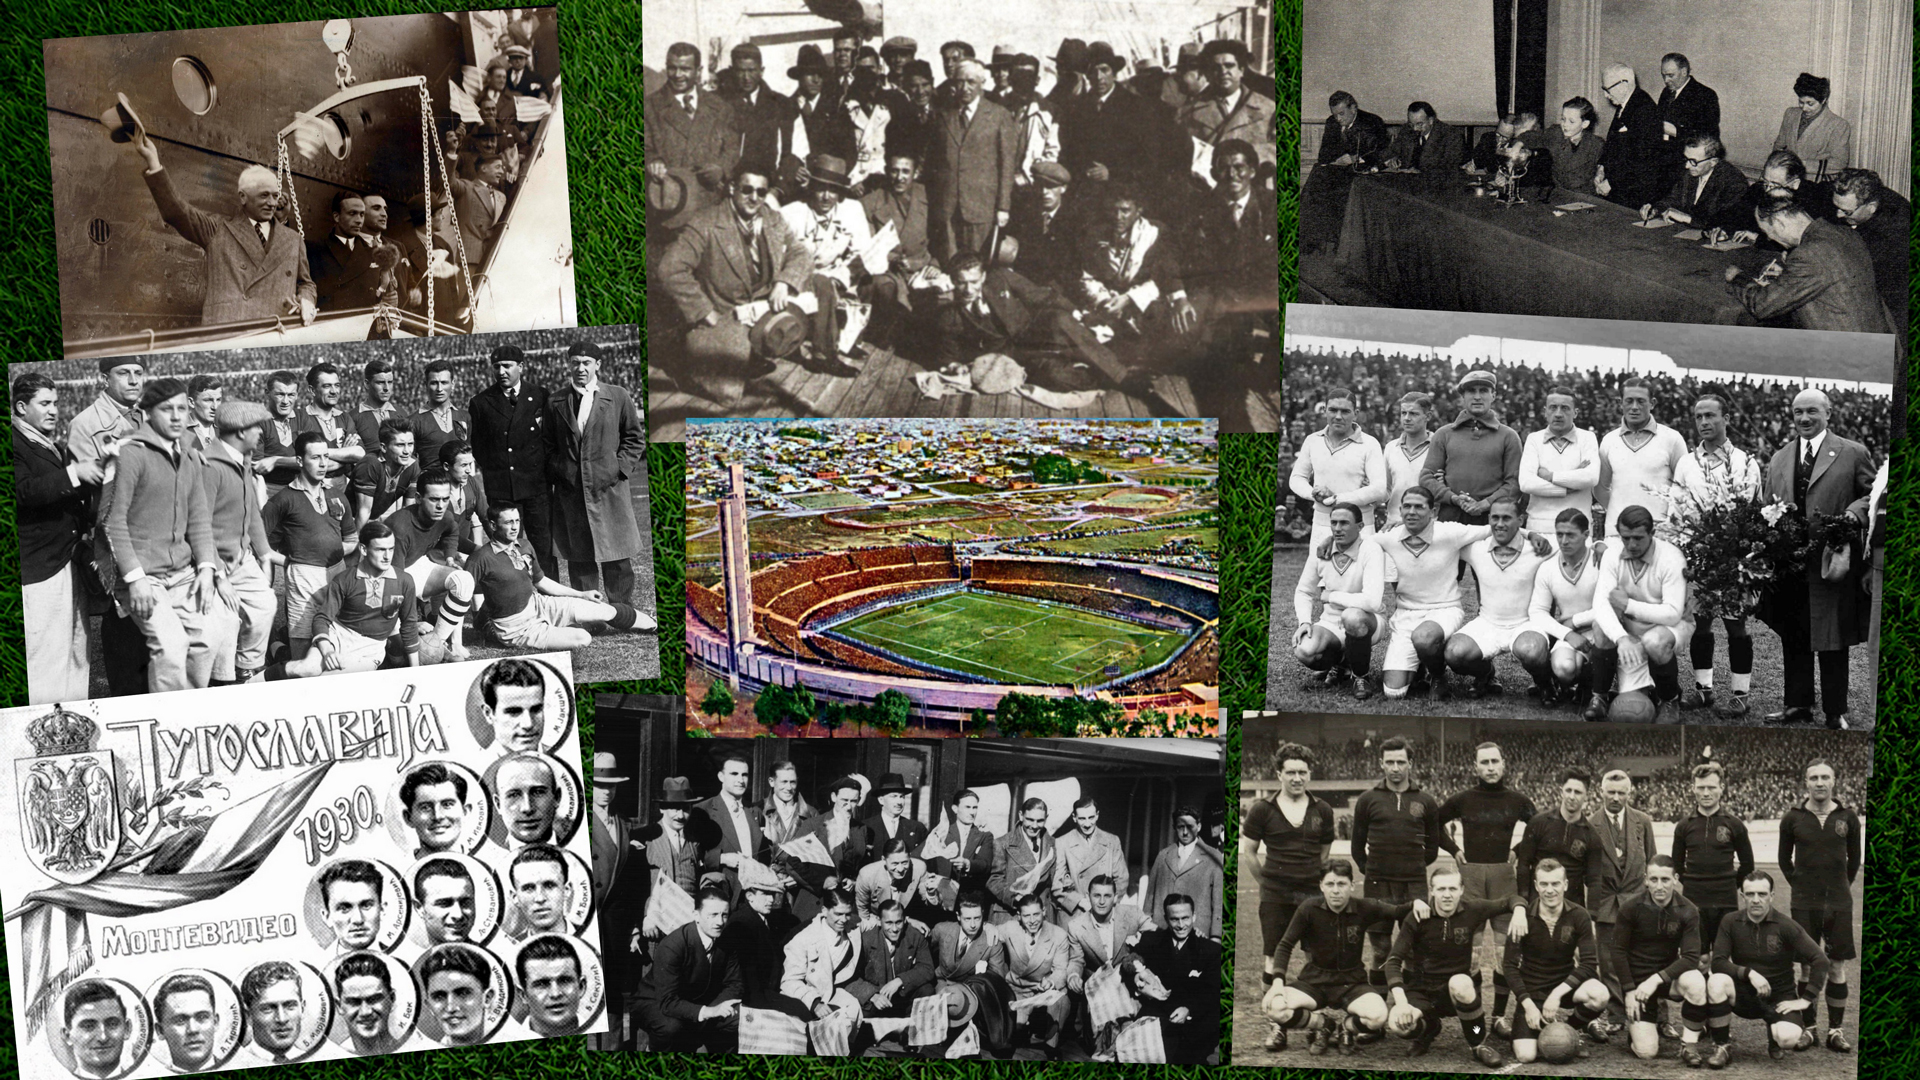 Сборные-участницы первого Чемпионата мира по футболу 1930 года